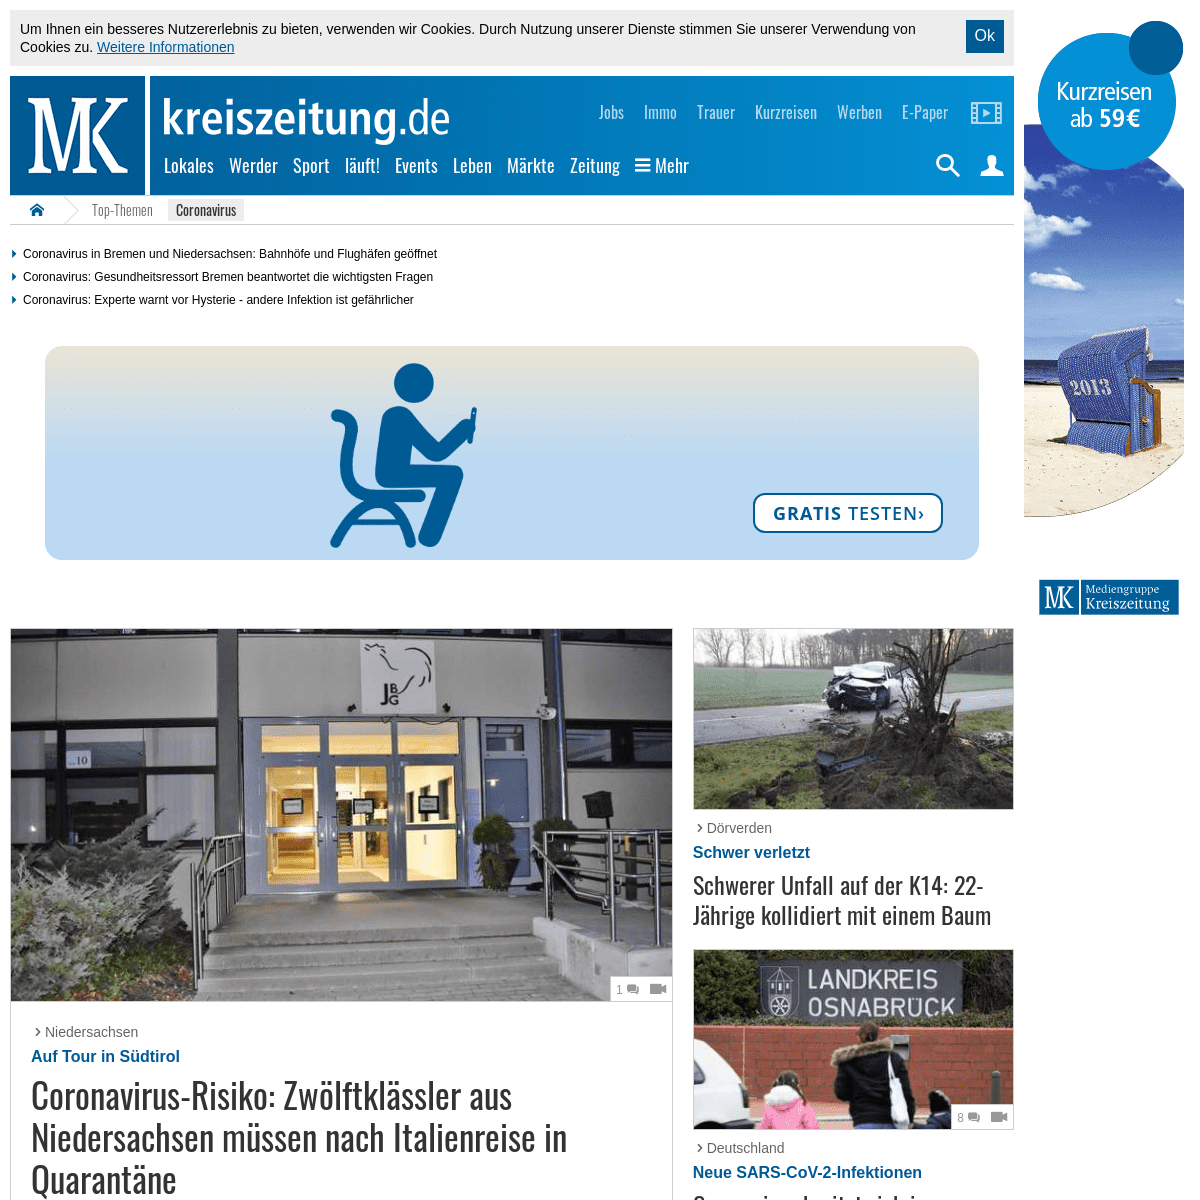 A complete backup of kreiszeitung.de